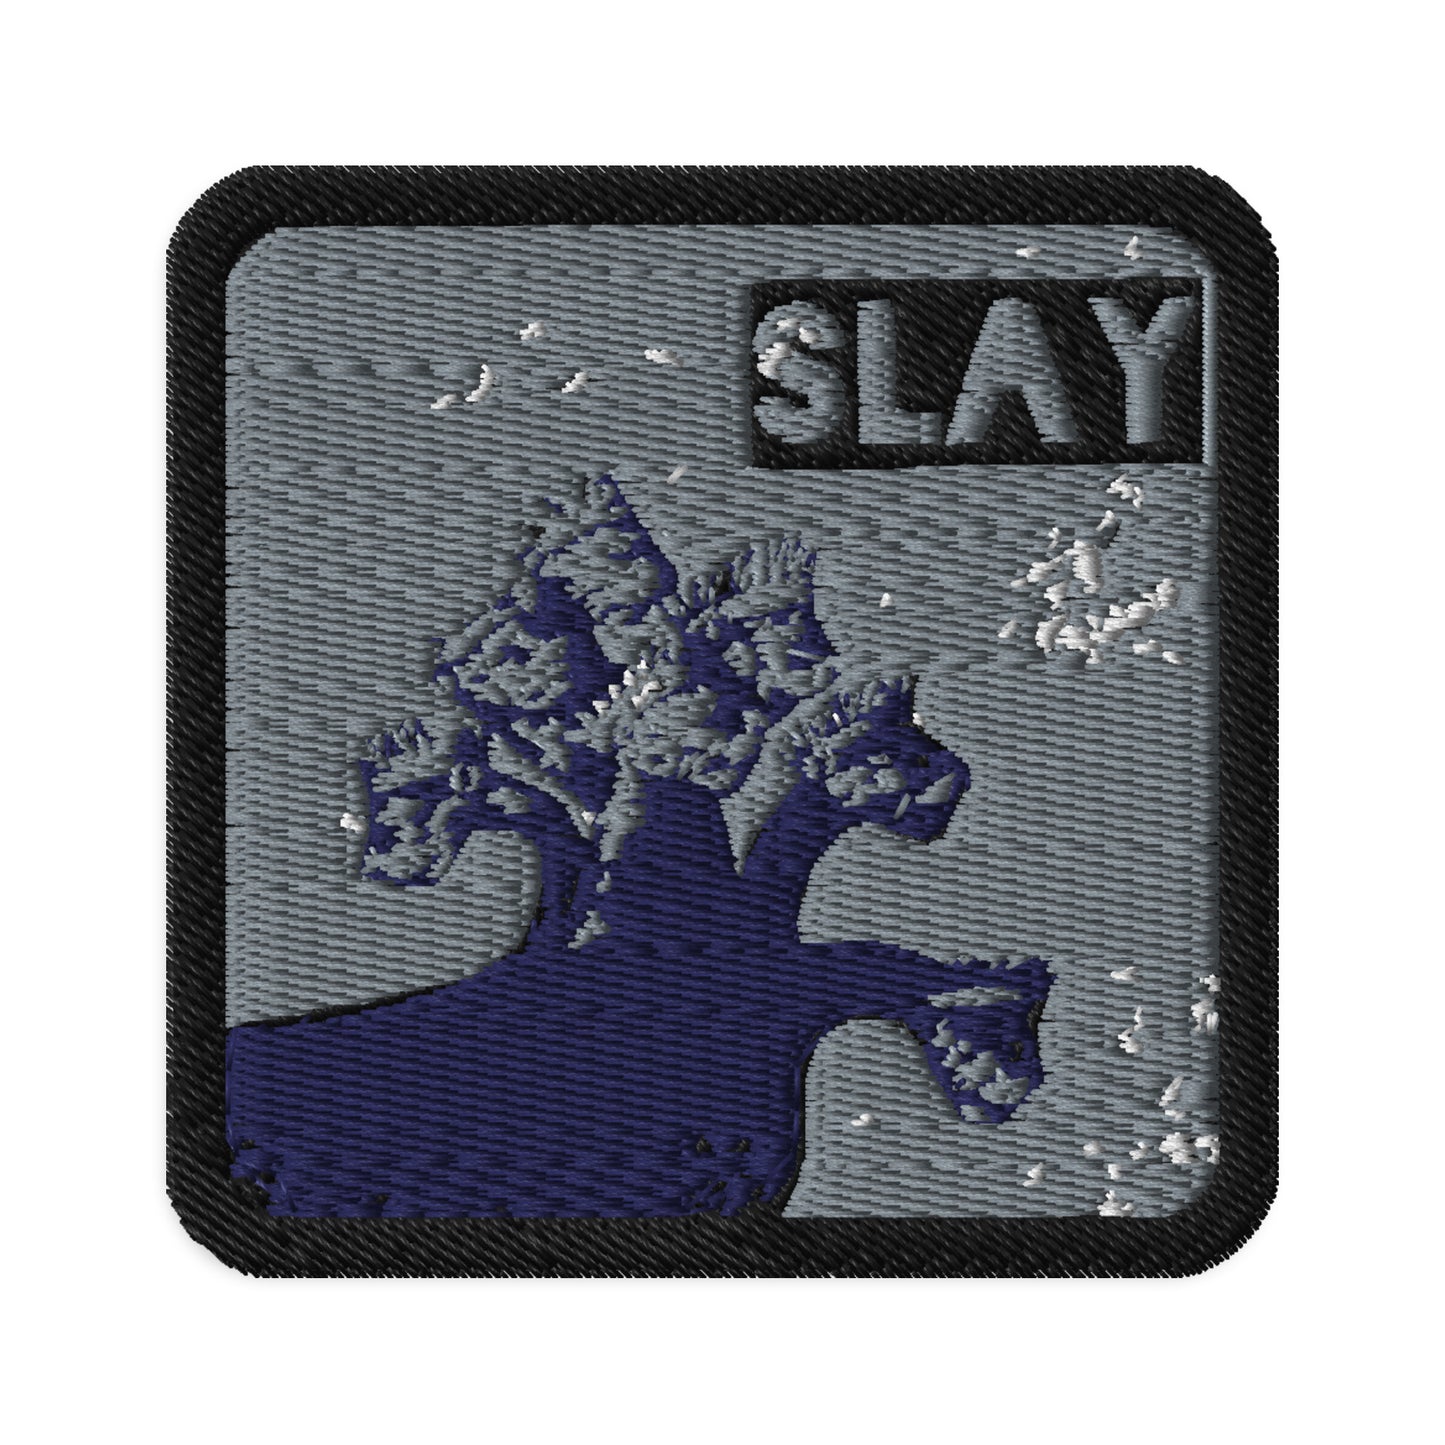 Slay | Patch, 3x3